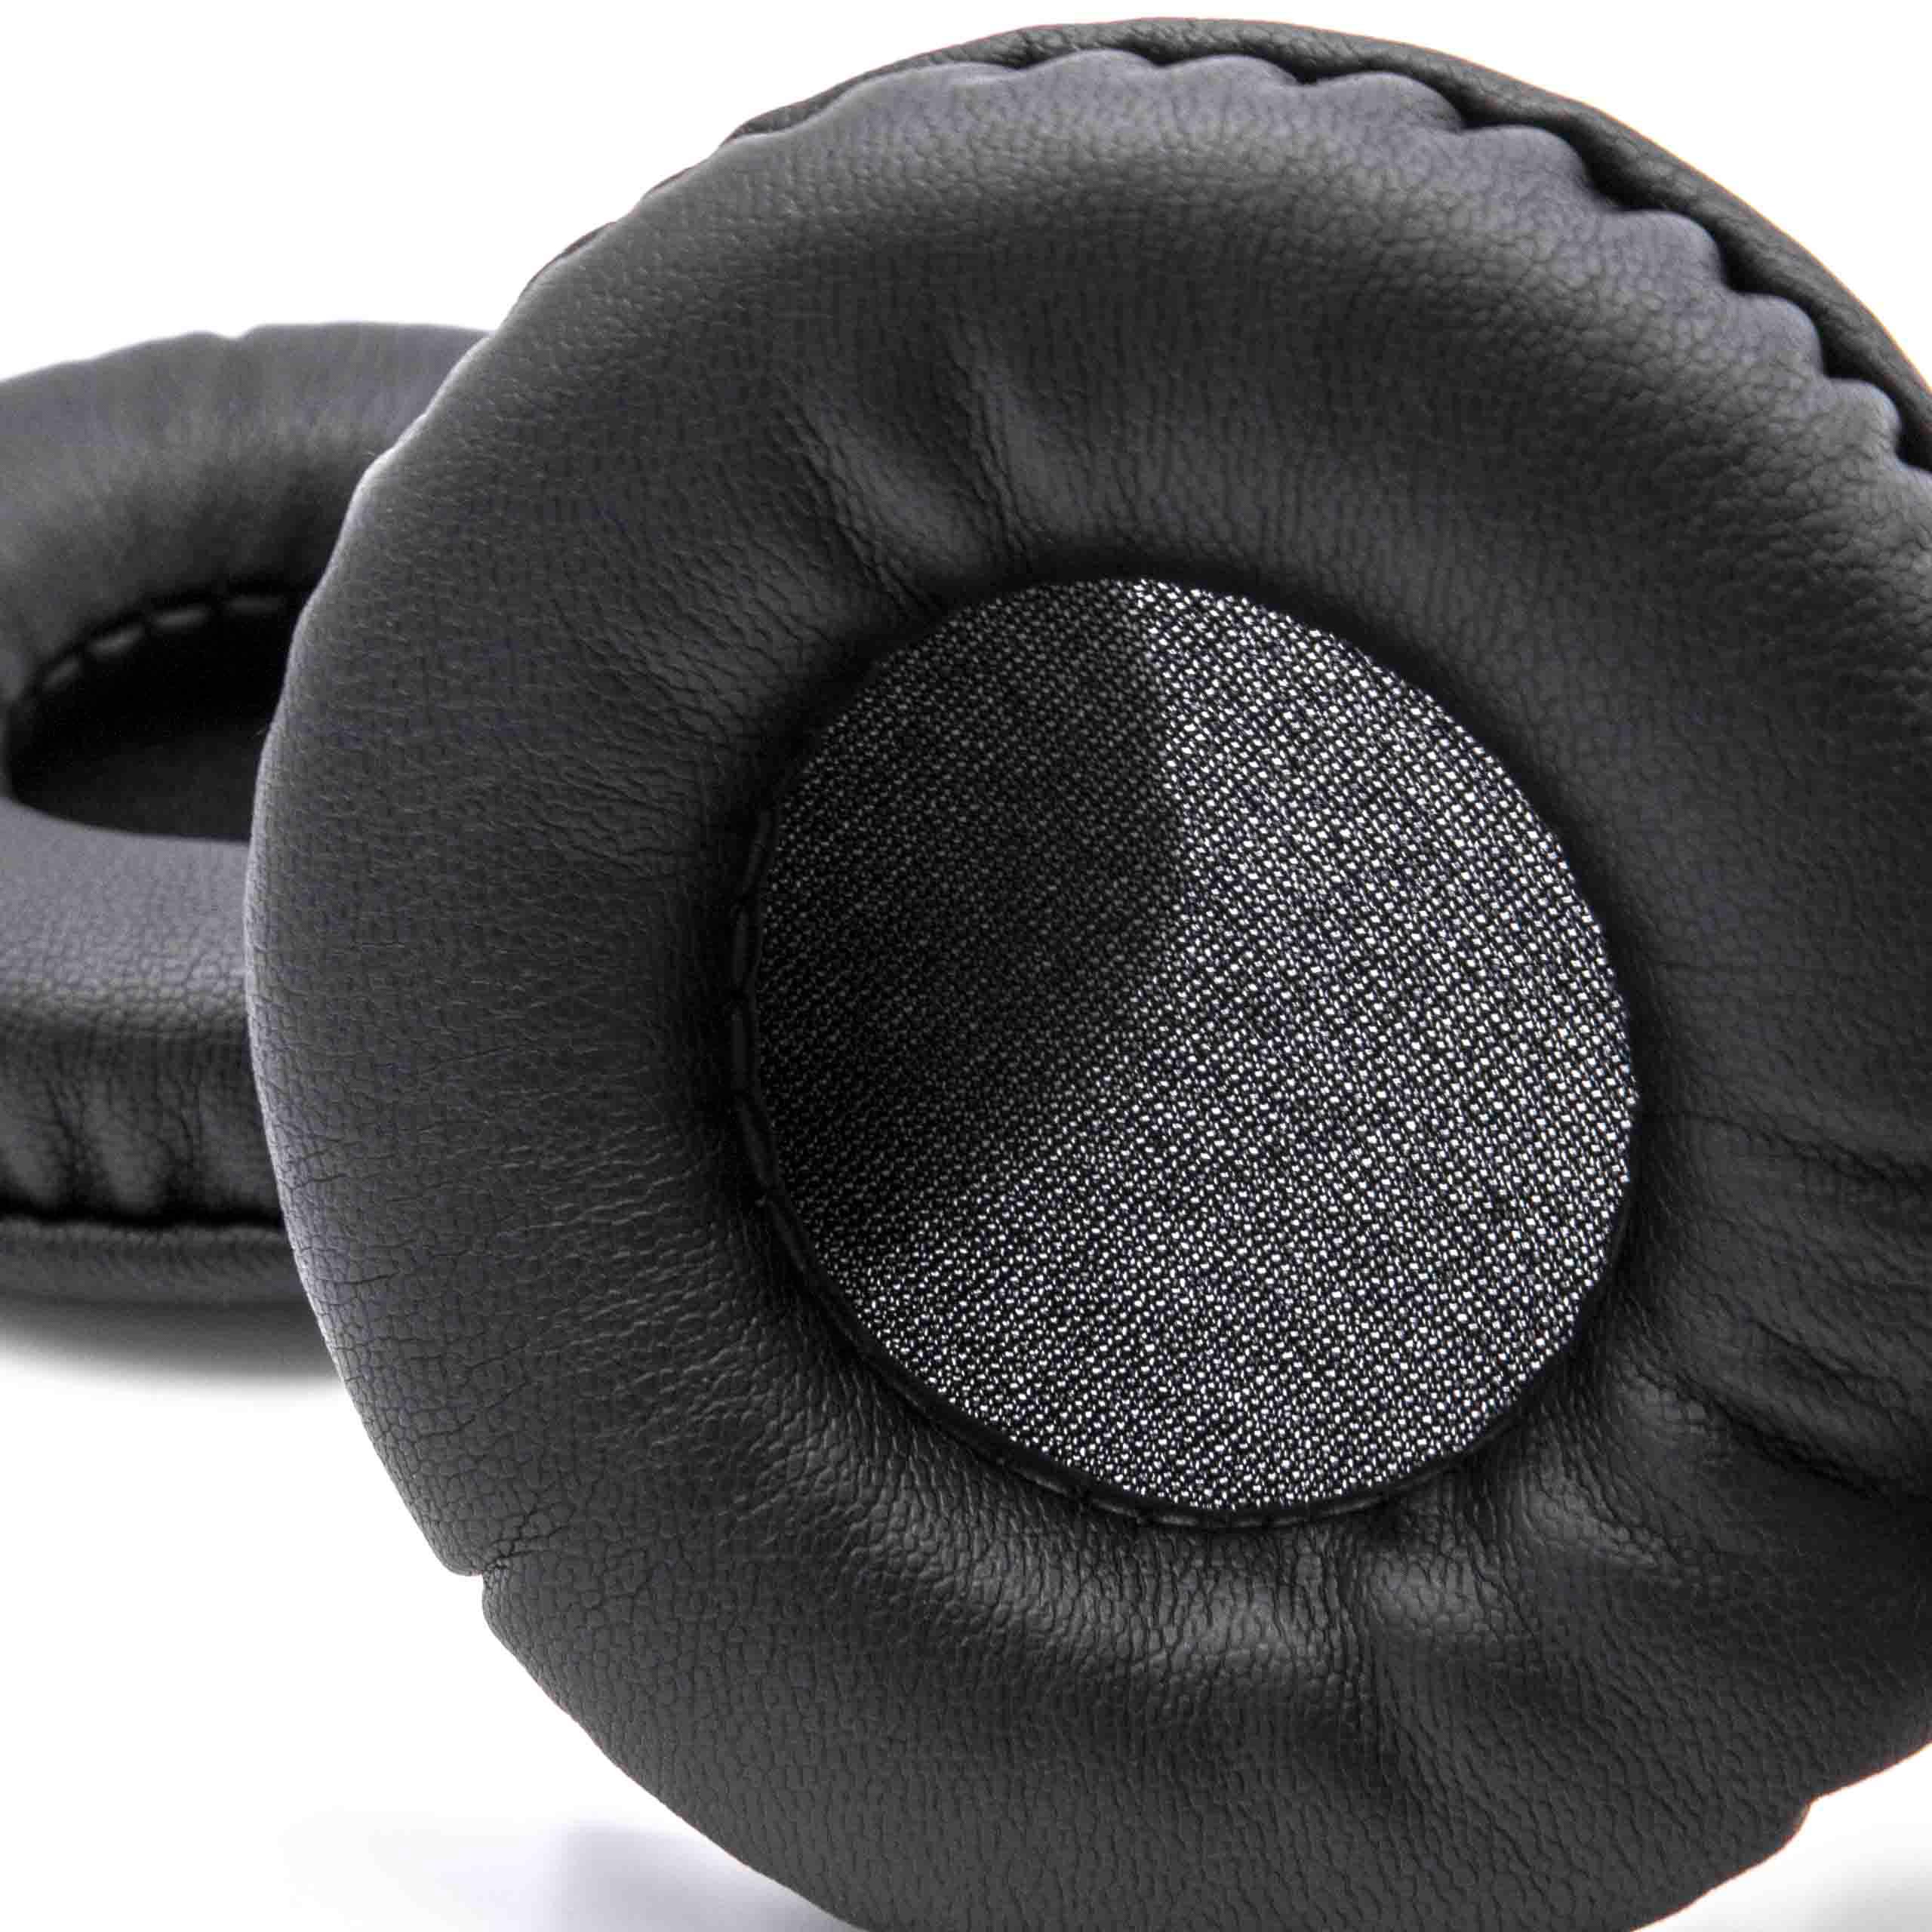 2x 1 paio di cuscinetti - poliuretano, 7,5 cm diametro esterno, nero